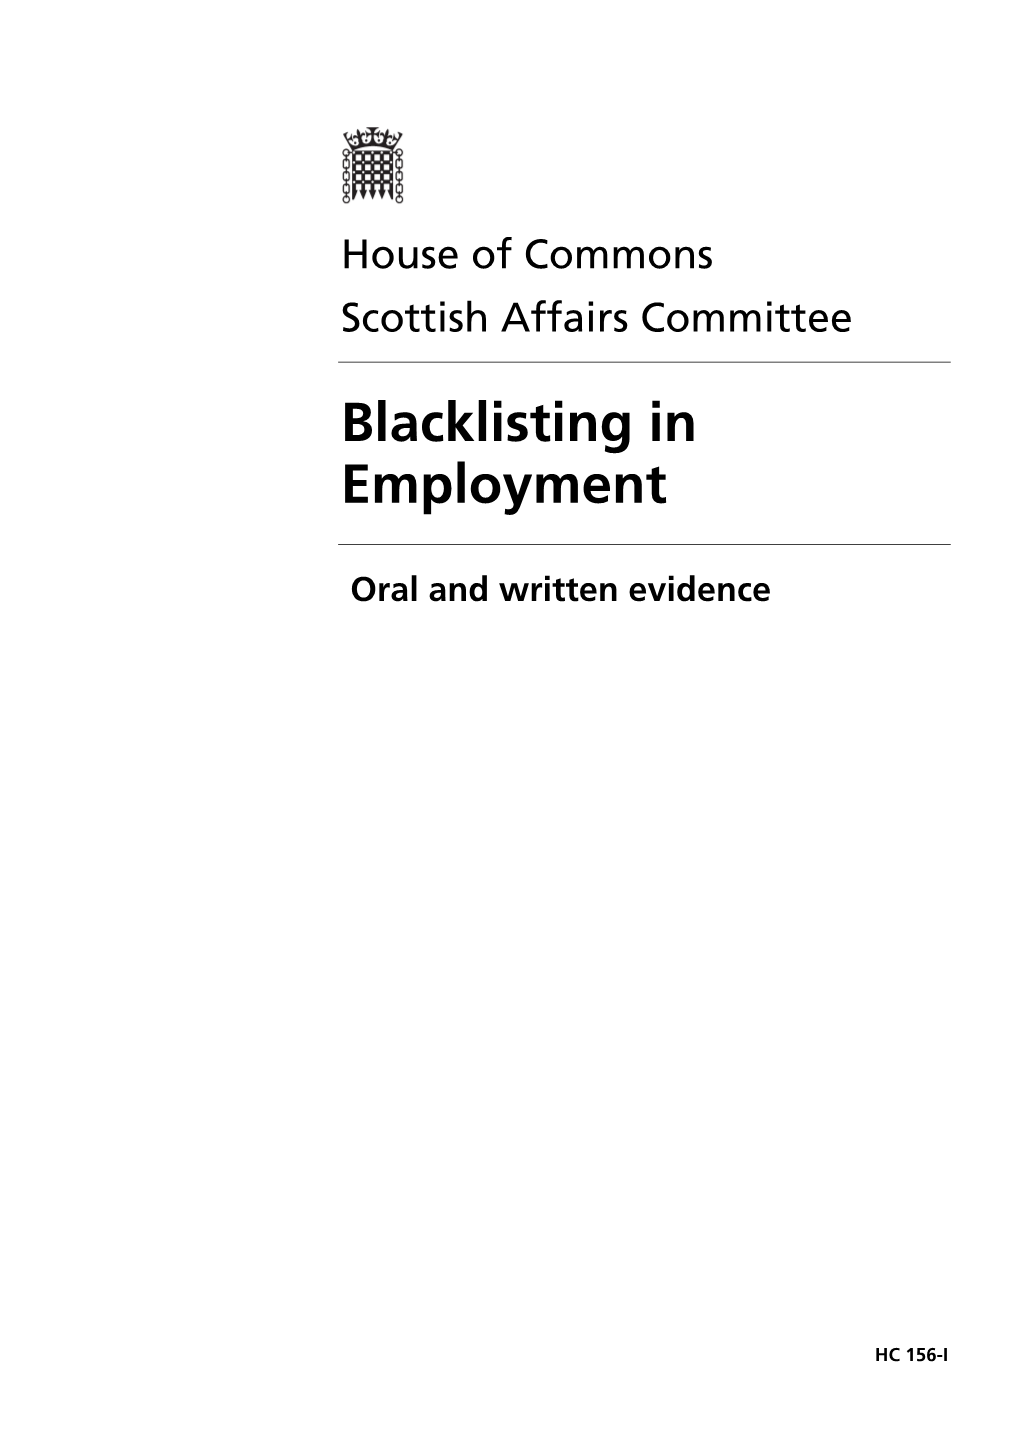 Blacklisting in Employment